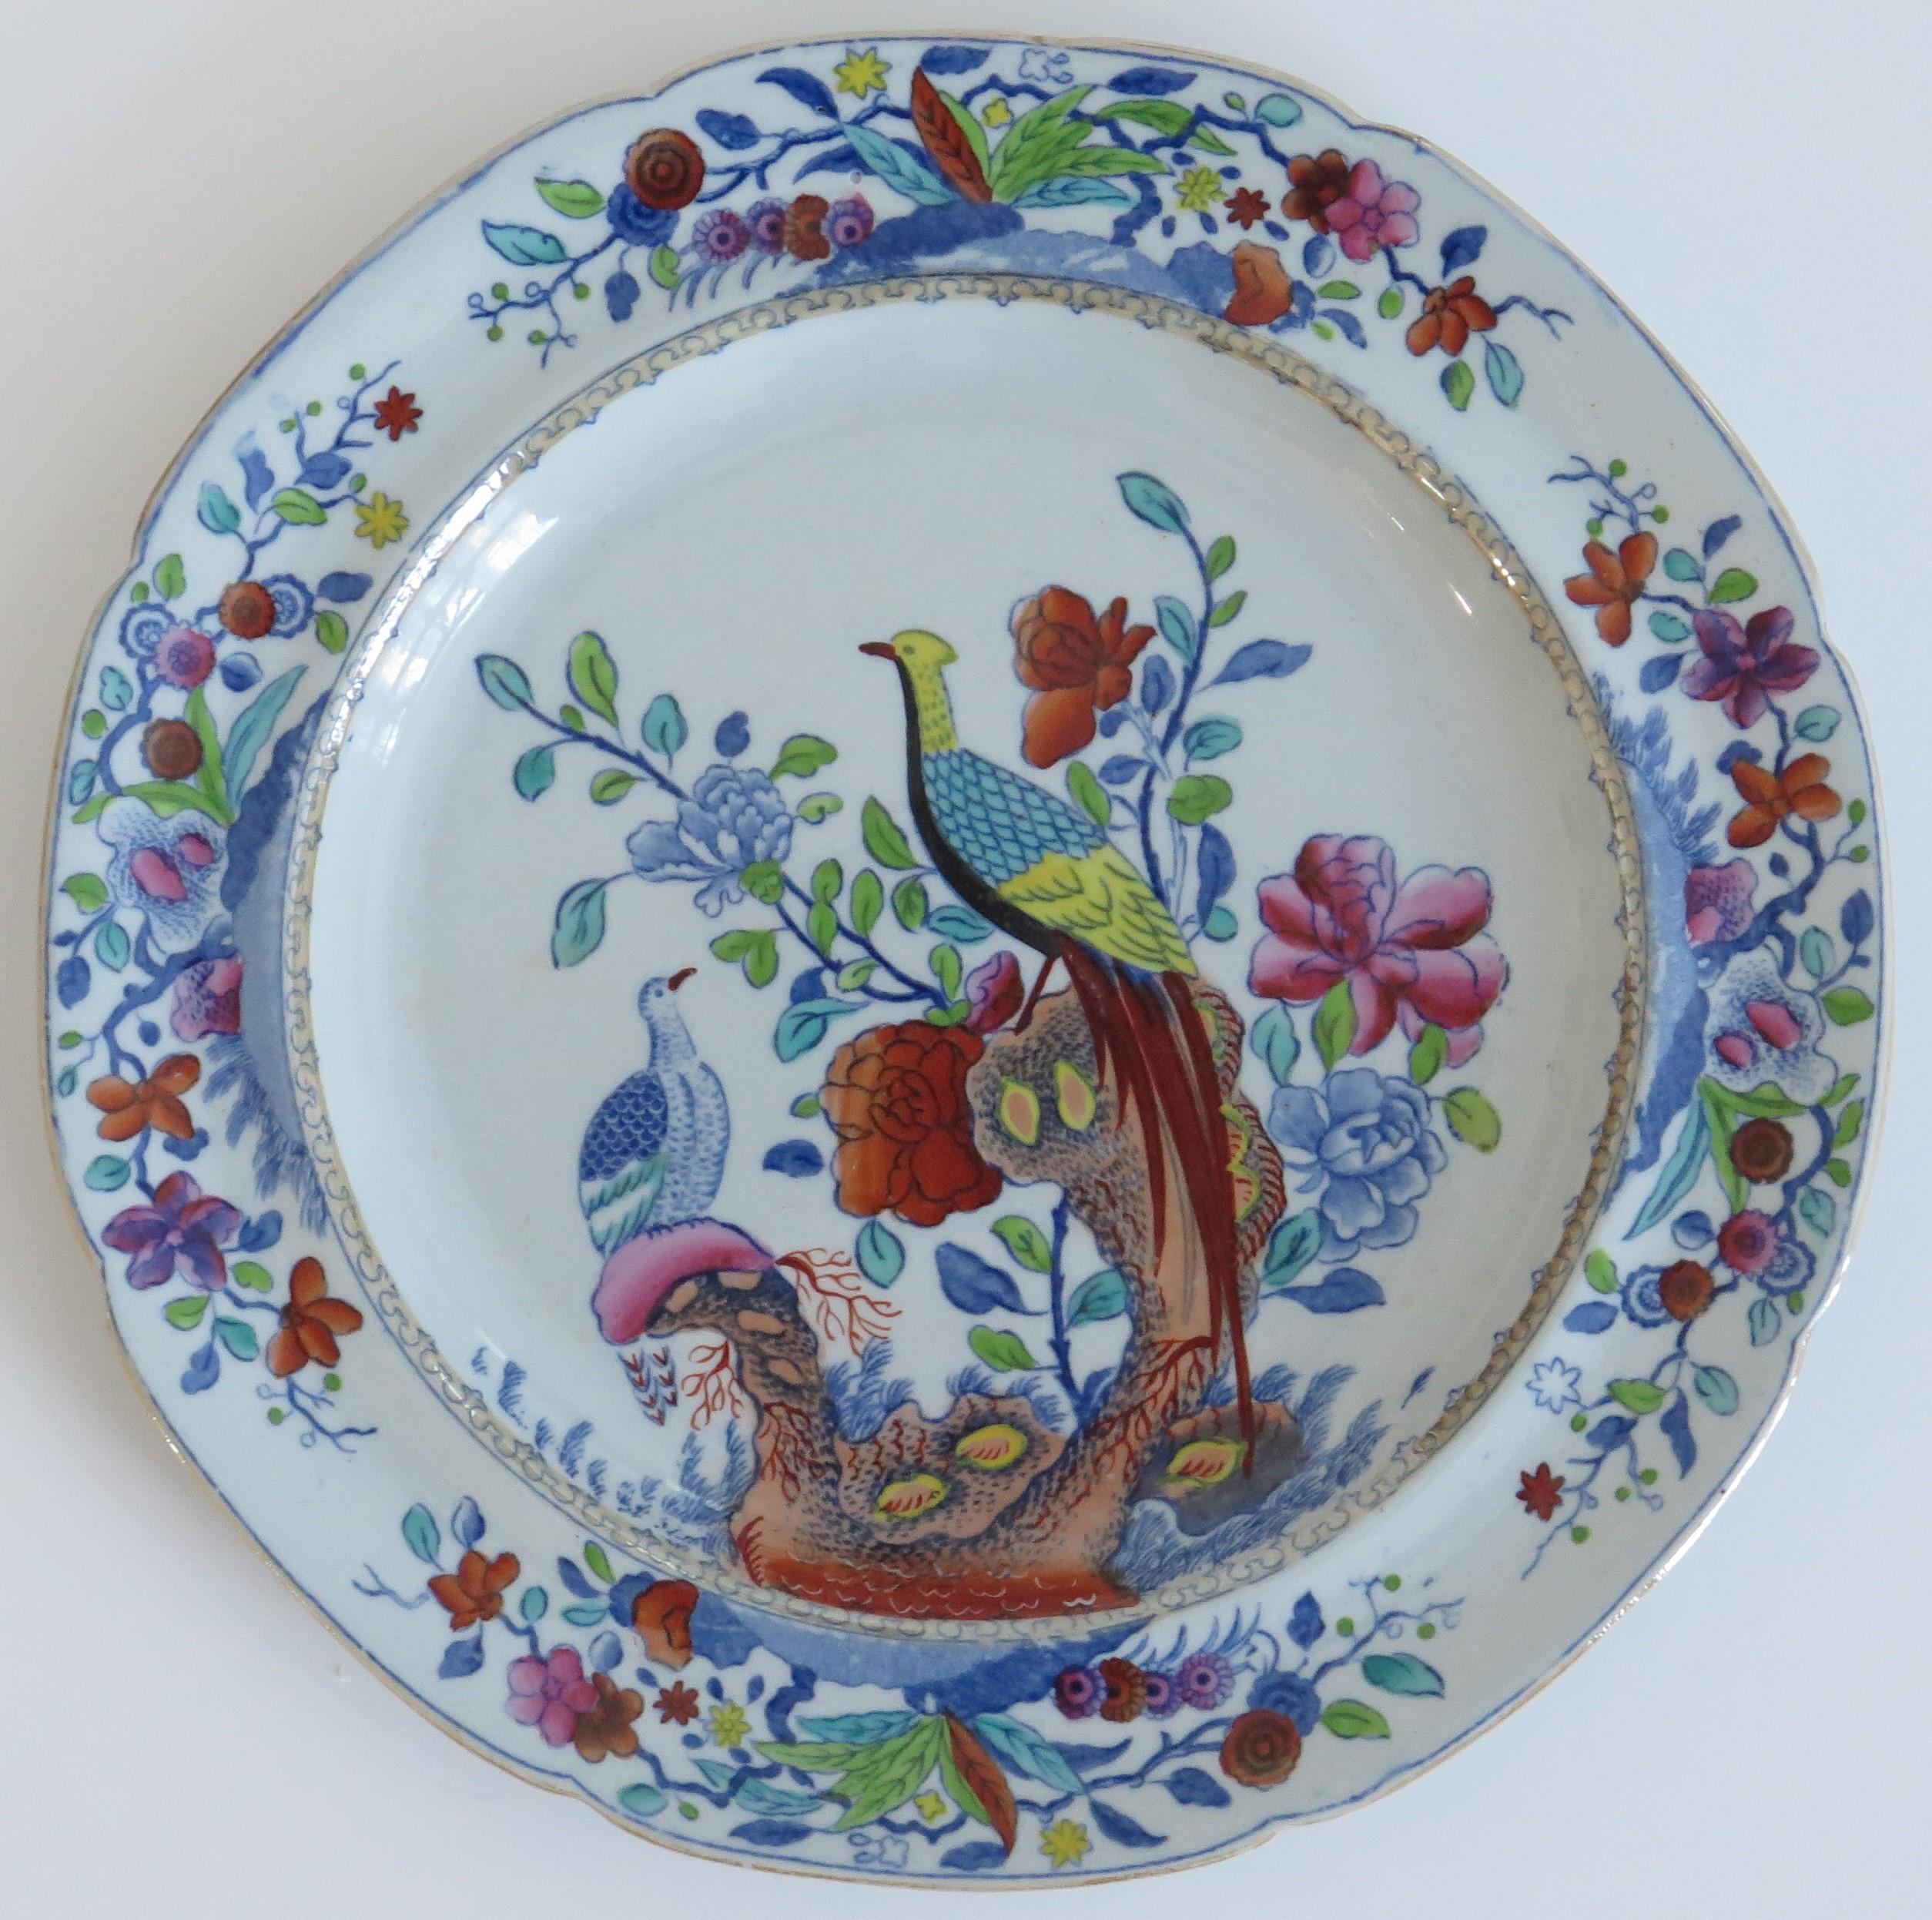 Il s'agit d'un plat d'accompagnement très décoratif de Spode, réalisé en Stone China (Ironstone) et décoré du motif du faisan oriental, datant de la période géorgienne, vers 1820.

L'assiette est de forme circulaire avec un bord dentelé et est